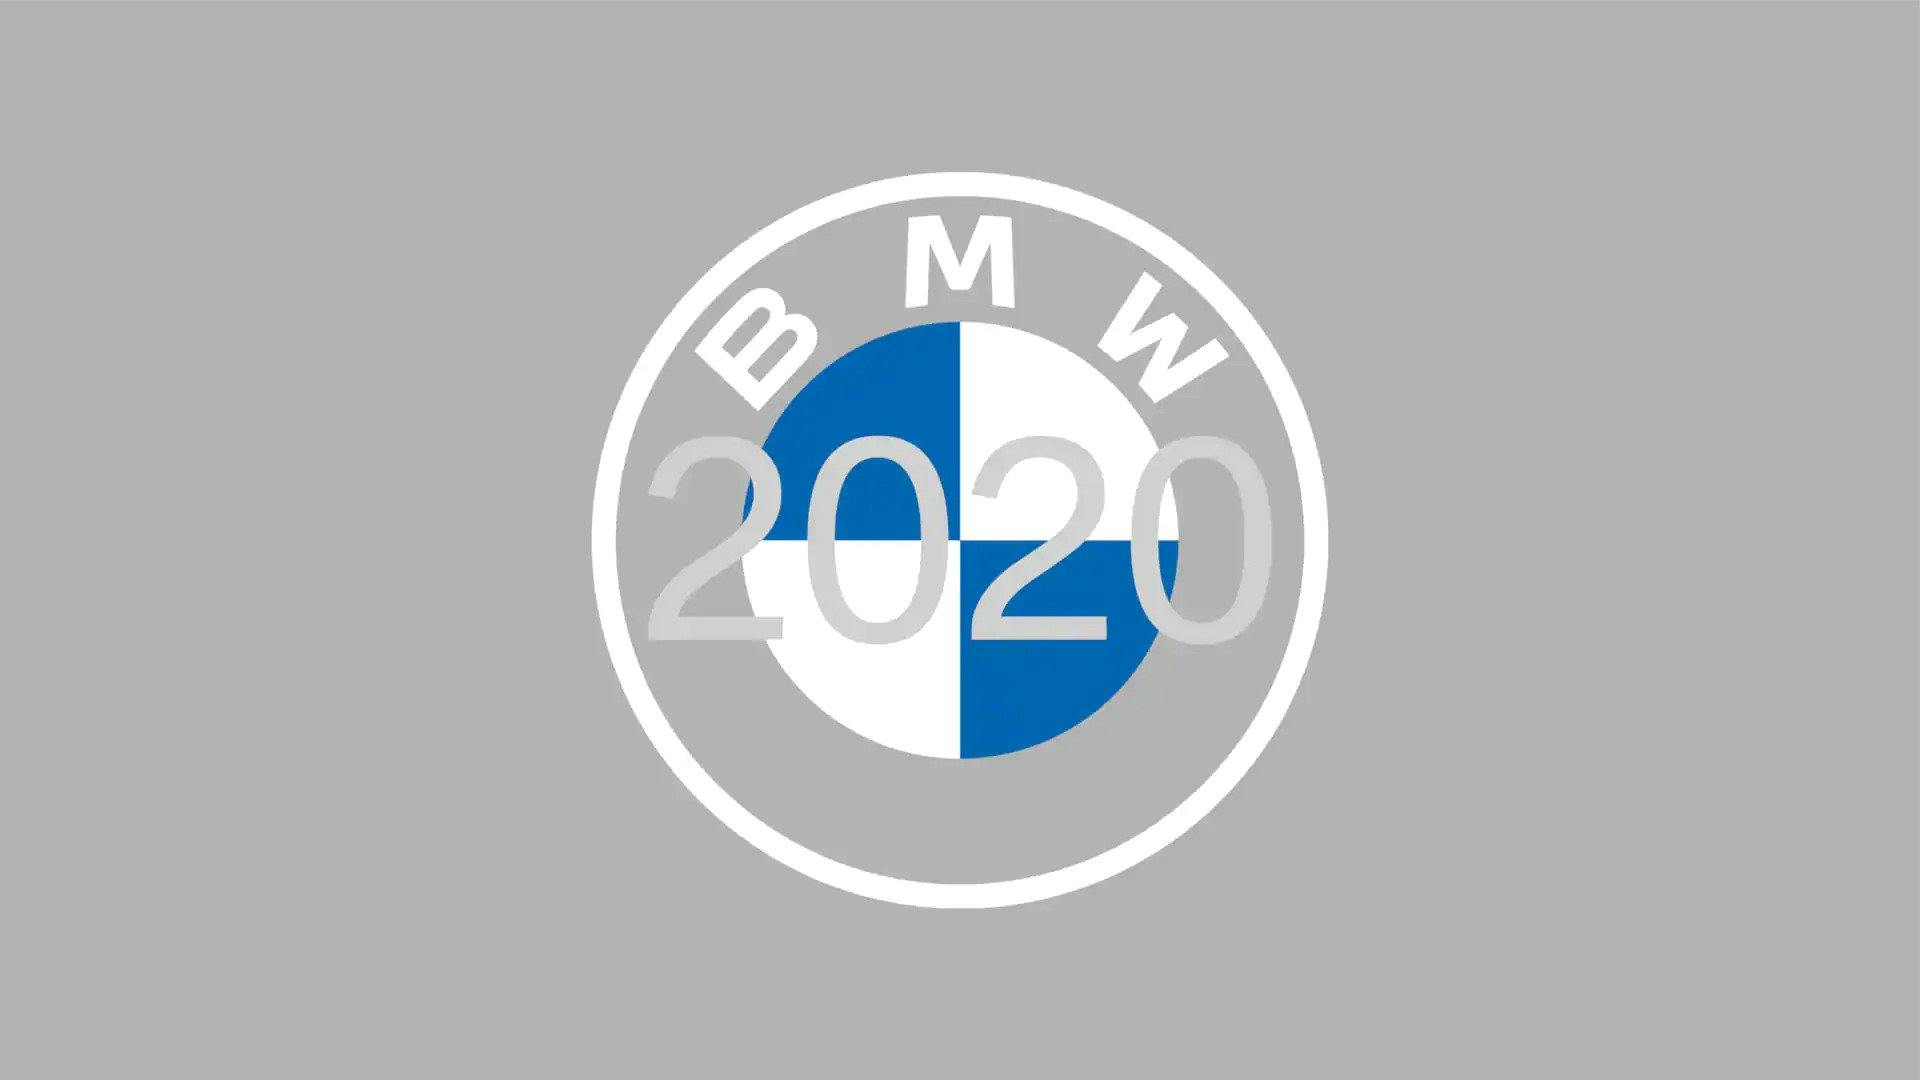 Rediseño del logotipo de BMW para 2020